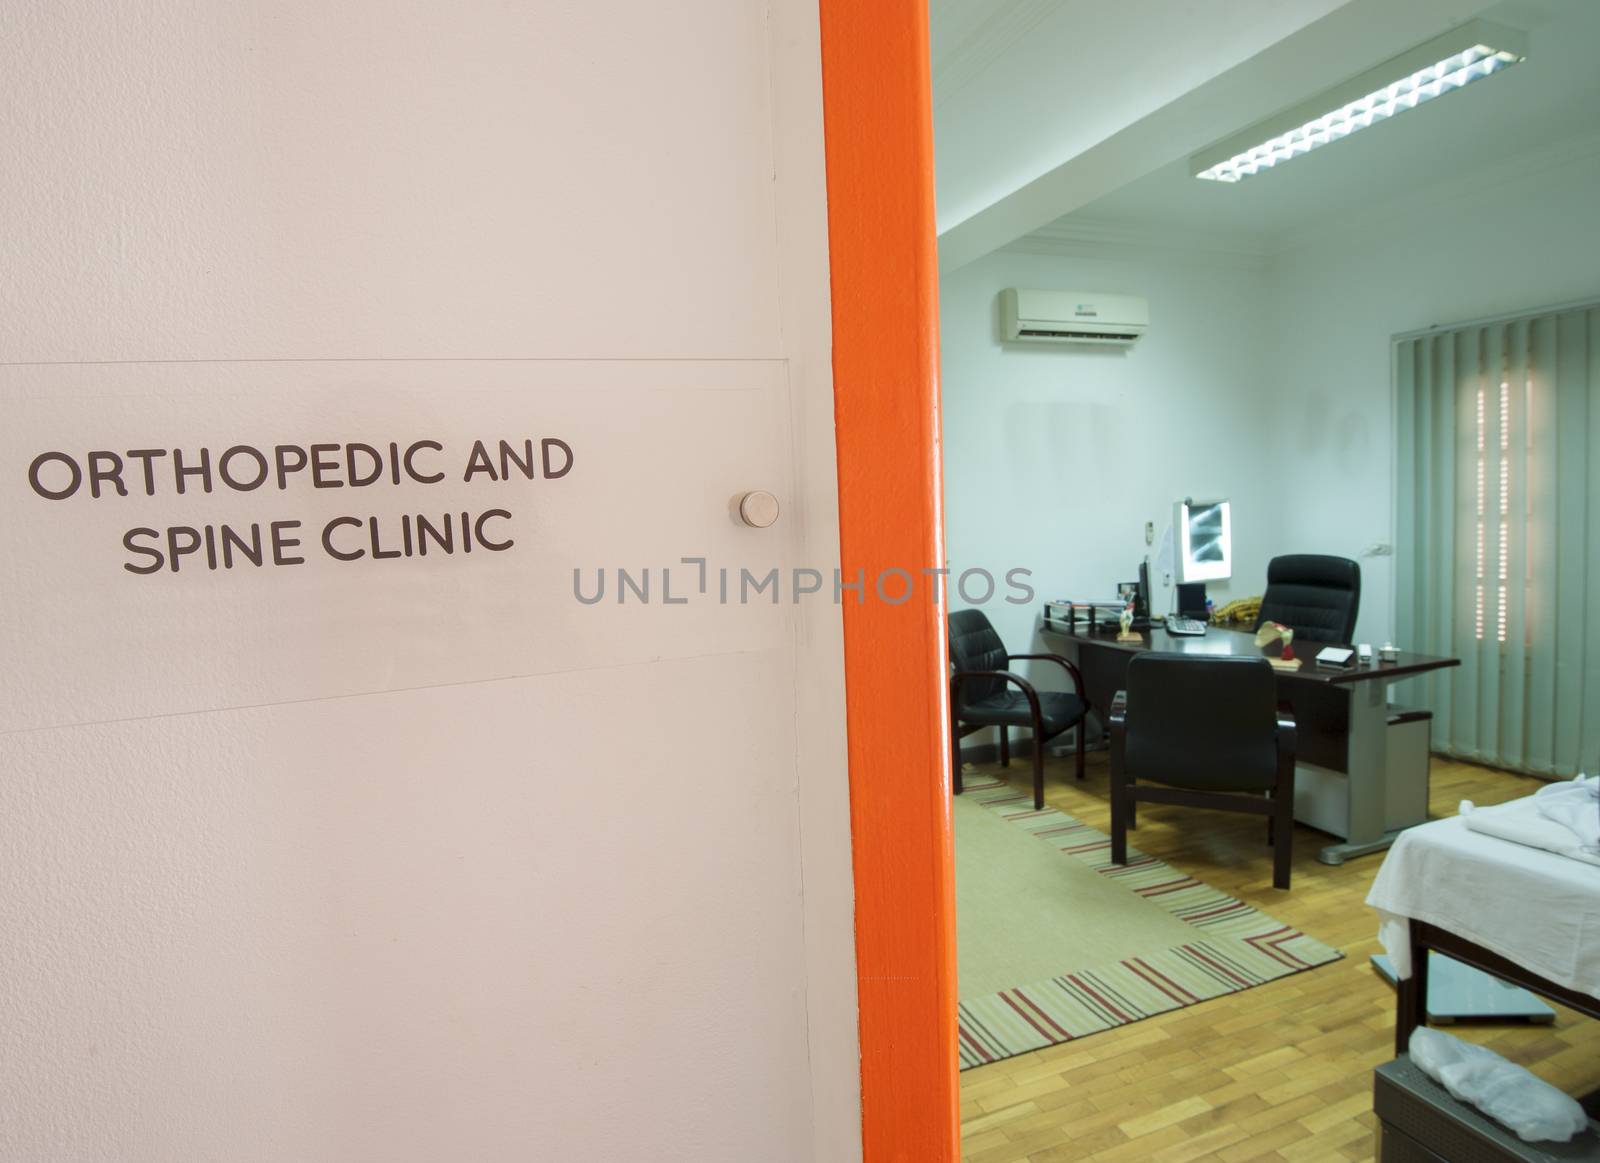 Doctors consultation room by paulvinten